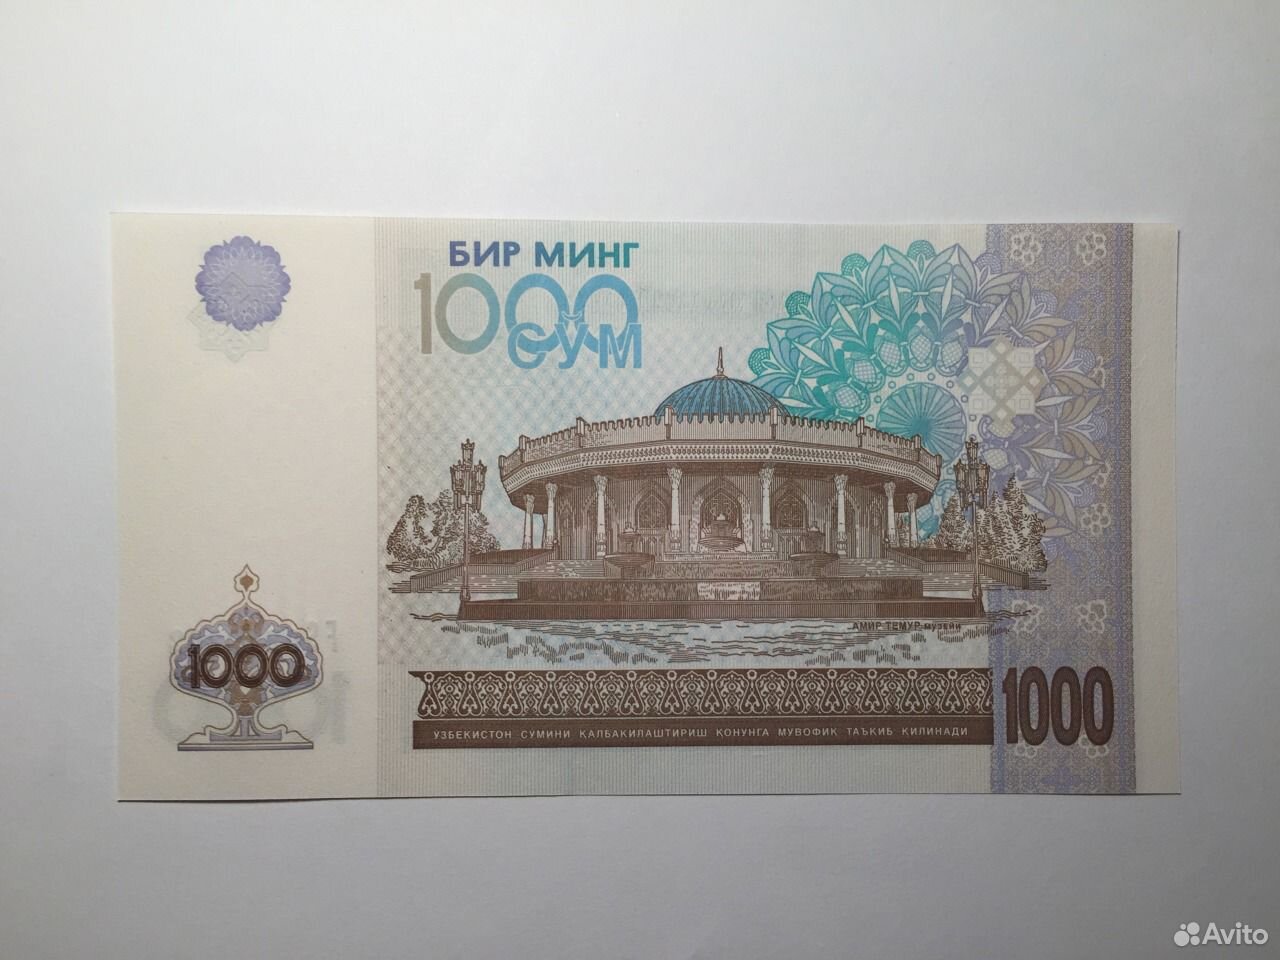 25 тысяч рублей в сумах узбекских